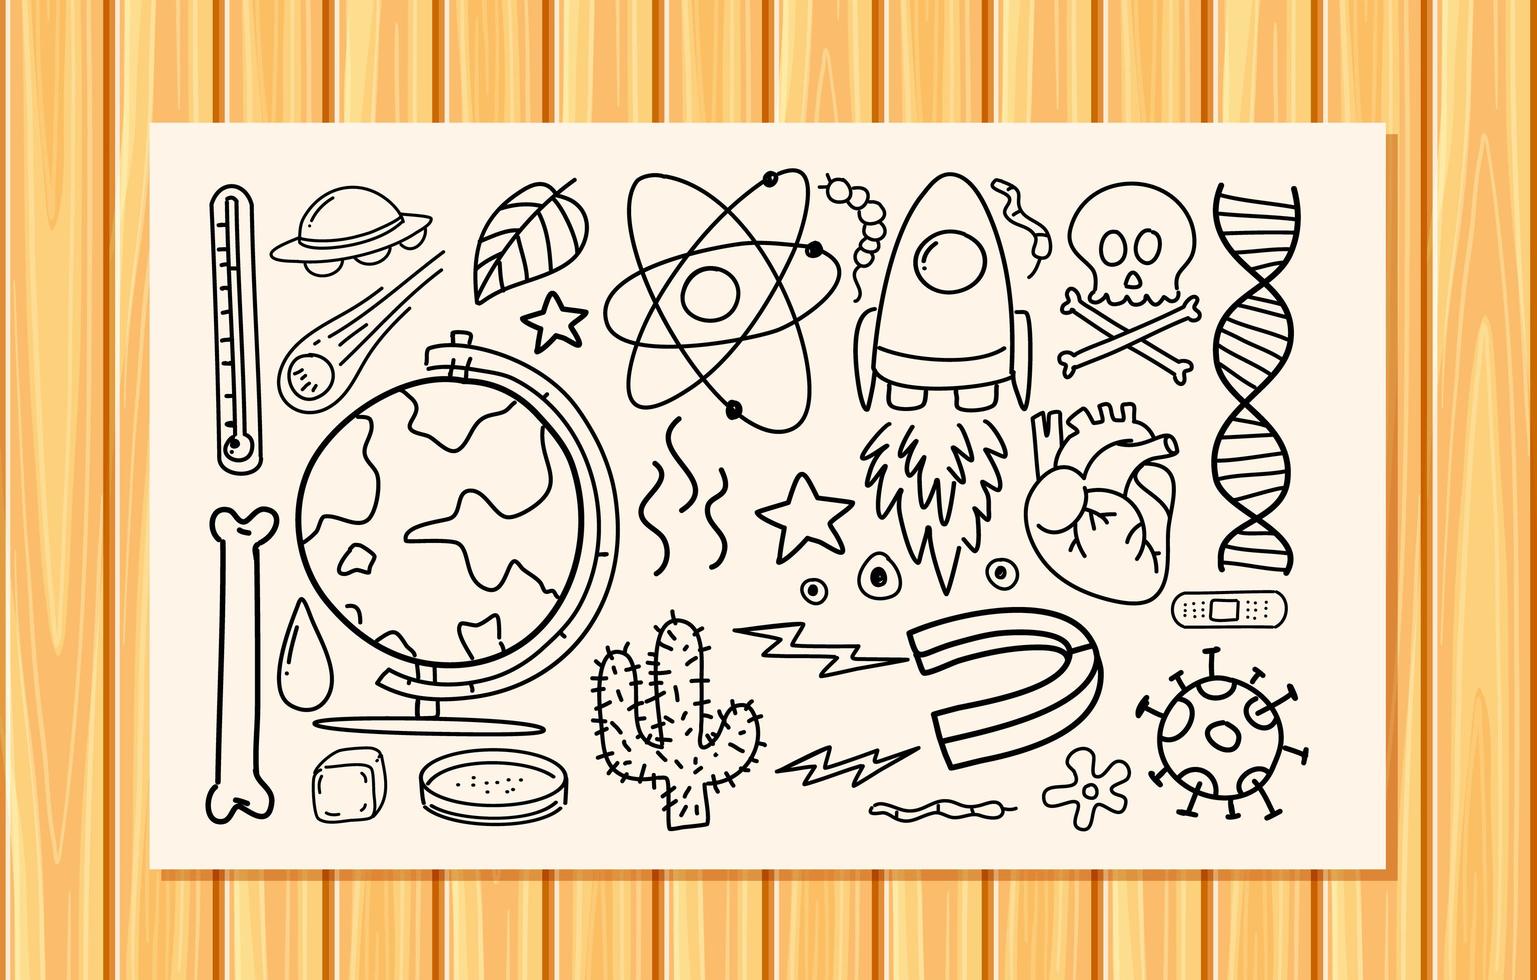 diversi tratti di doodle sulle attrezzature scientifiche su una carta vettore